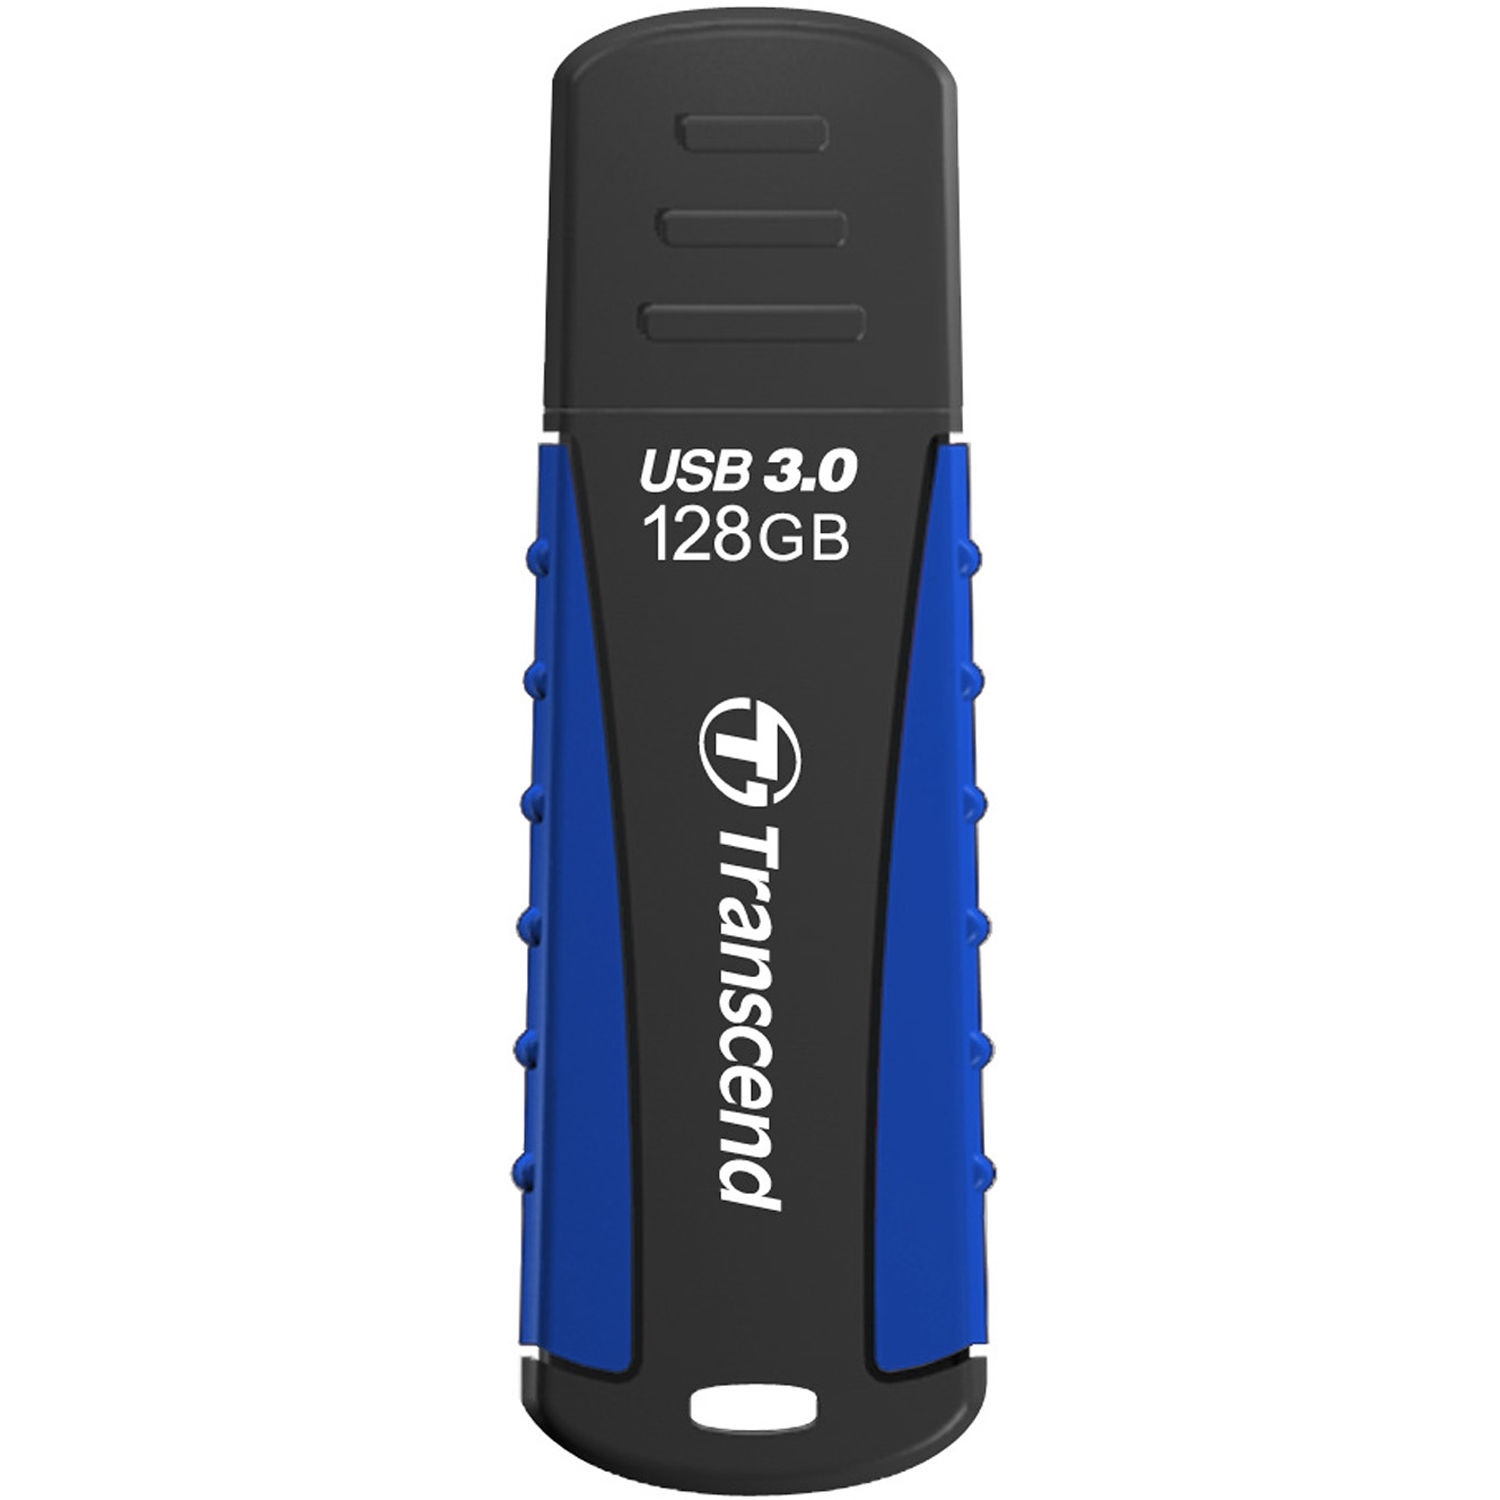 Transcend 128GB JetFlash 810 USB 3.0 Flash Drive (Navy Blue)